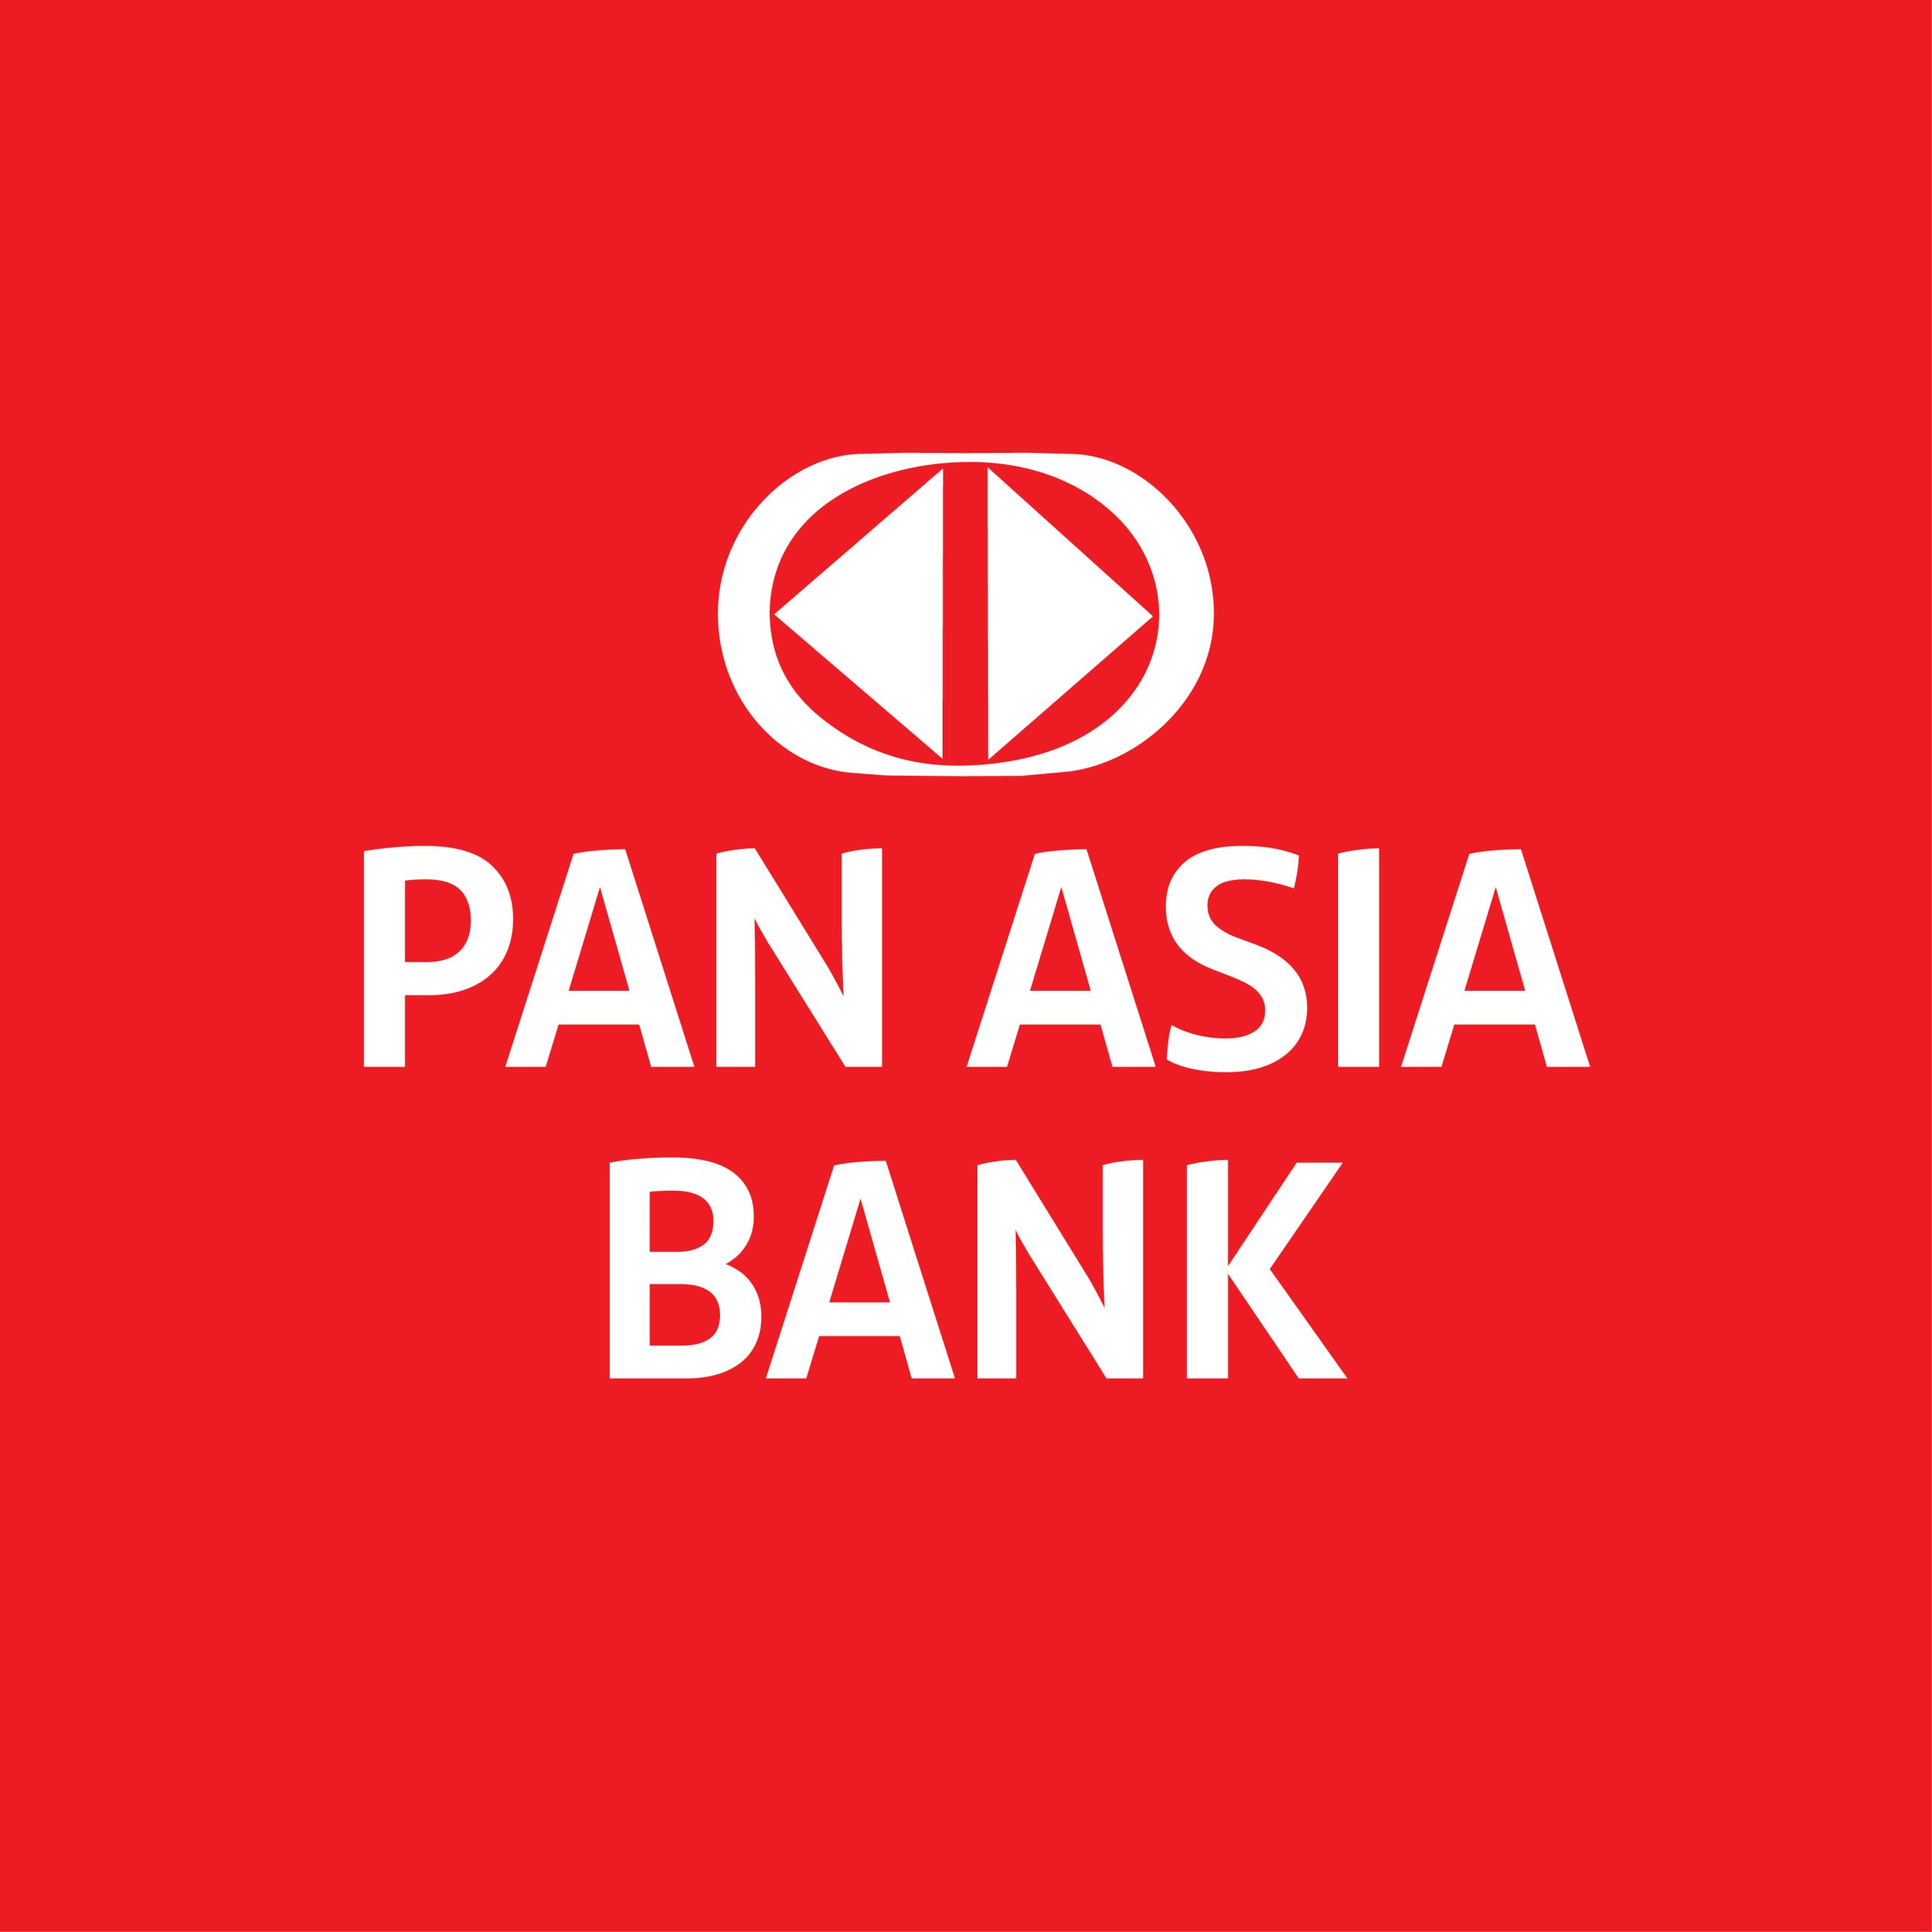 Pan Asia Bank